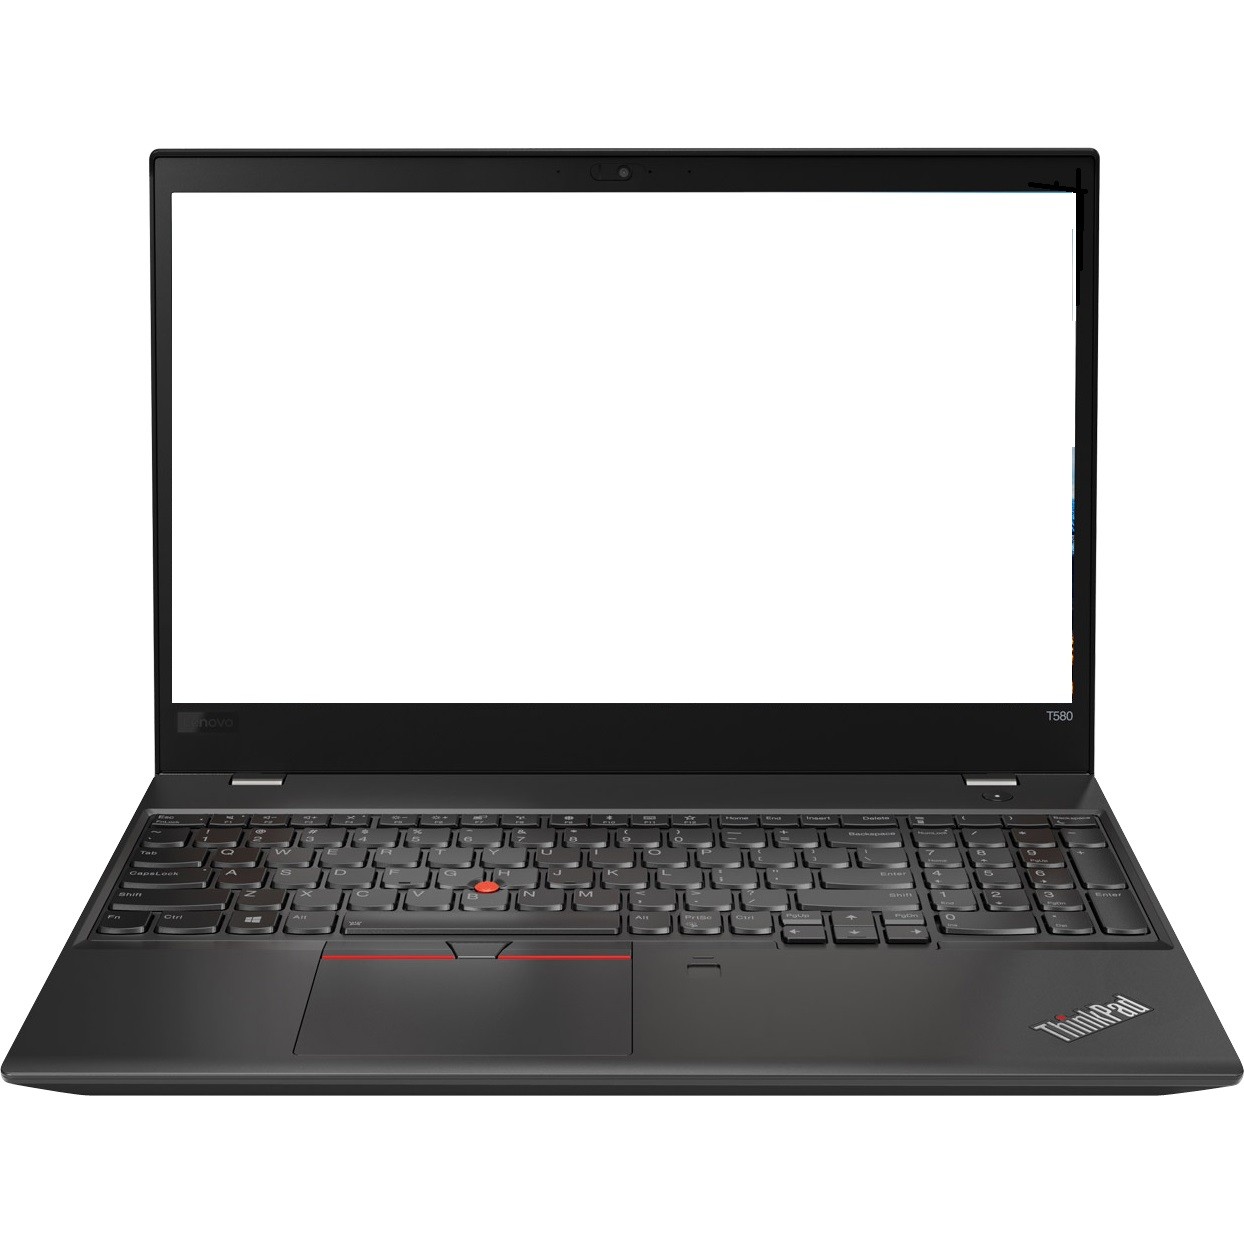 Lenovo ThinkPad T580 15.6" FHD i5-7200U 2.5GHz 8GB 512GB W10P Laptop R